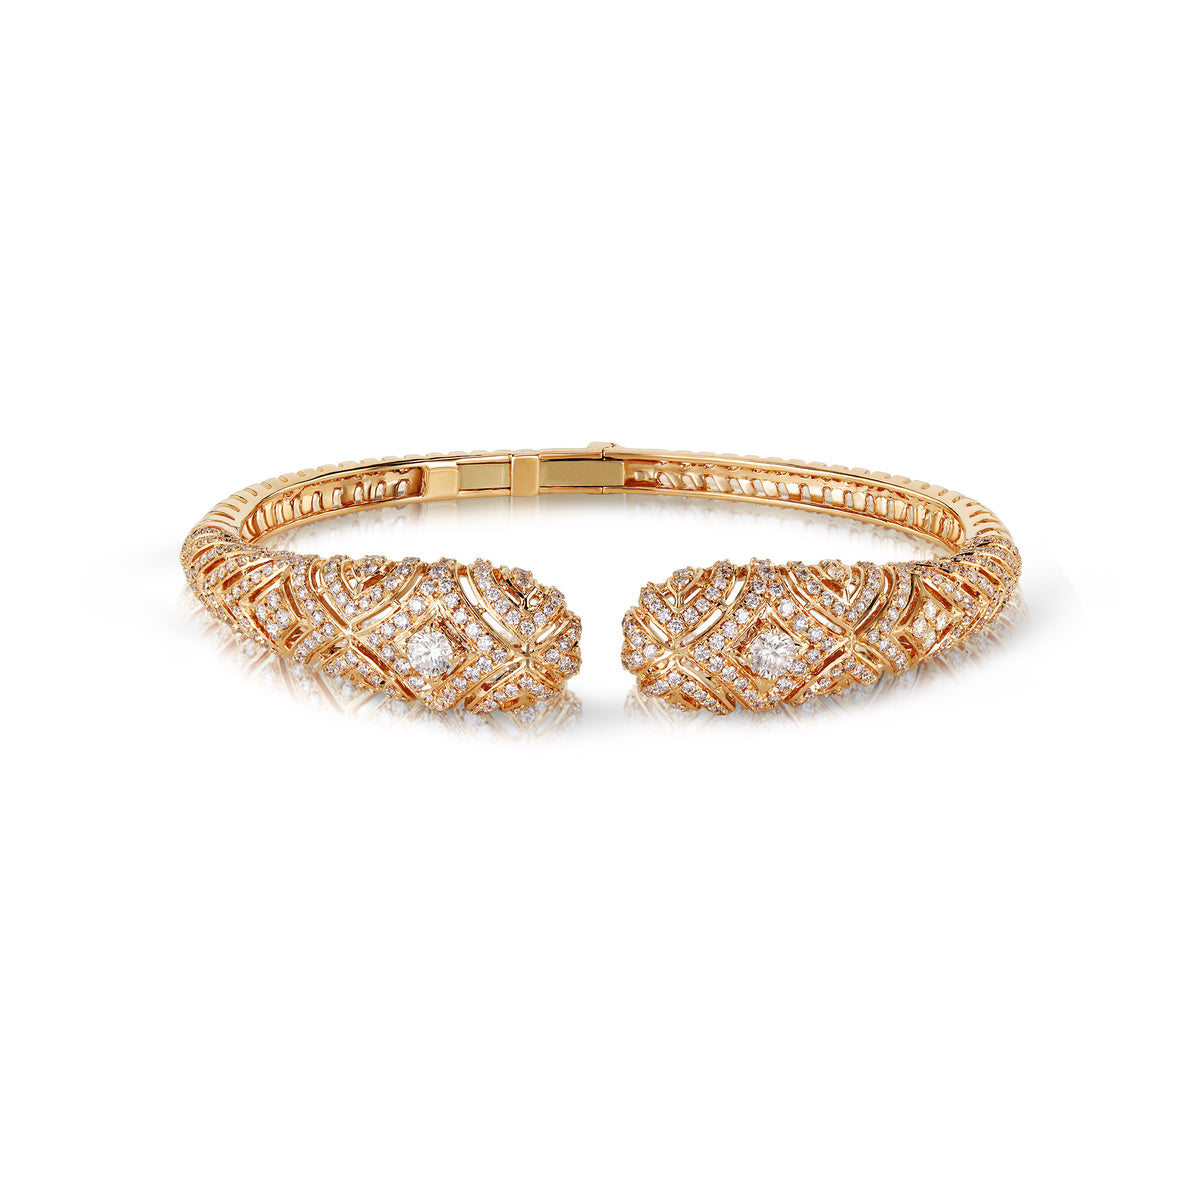 Buy Layered gold long bracelet embellished with flowers Online. – Odette